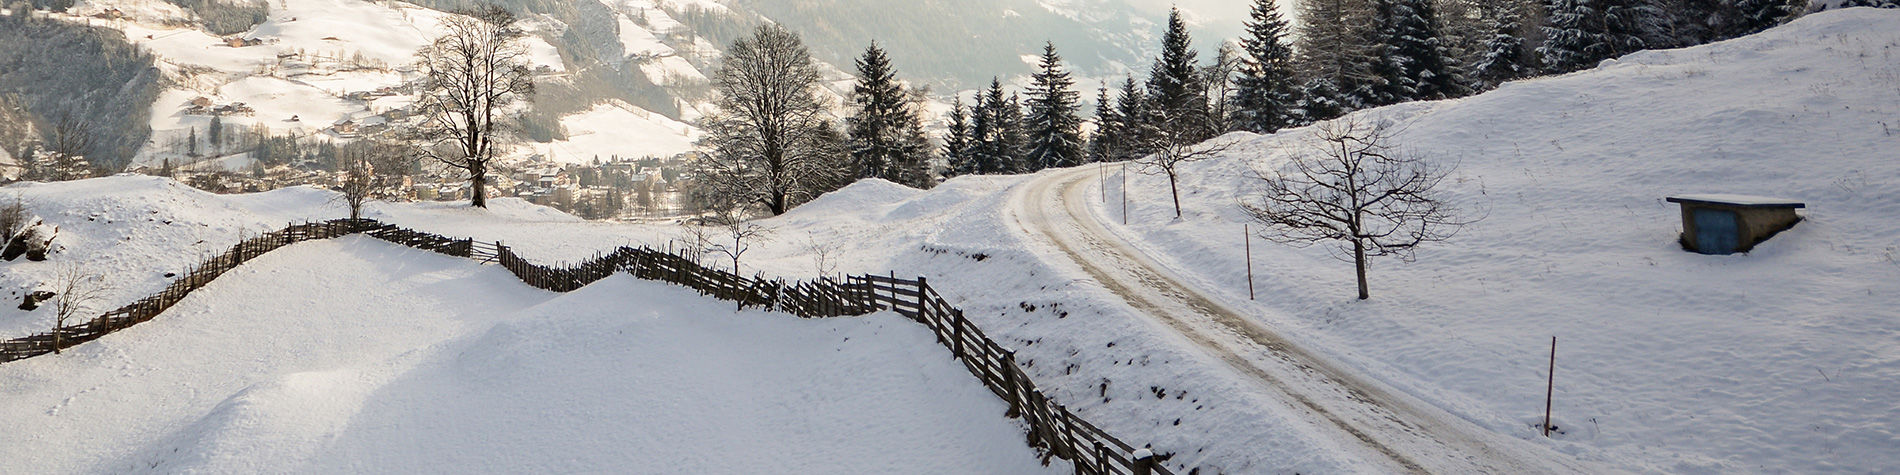 Pneus d'hiver à l'étranger - TCS Suisse